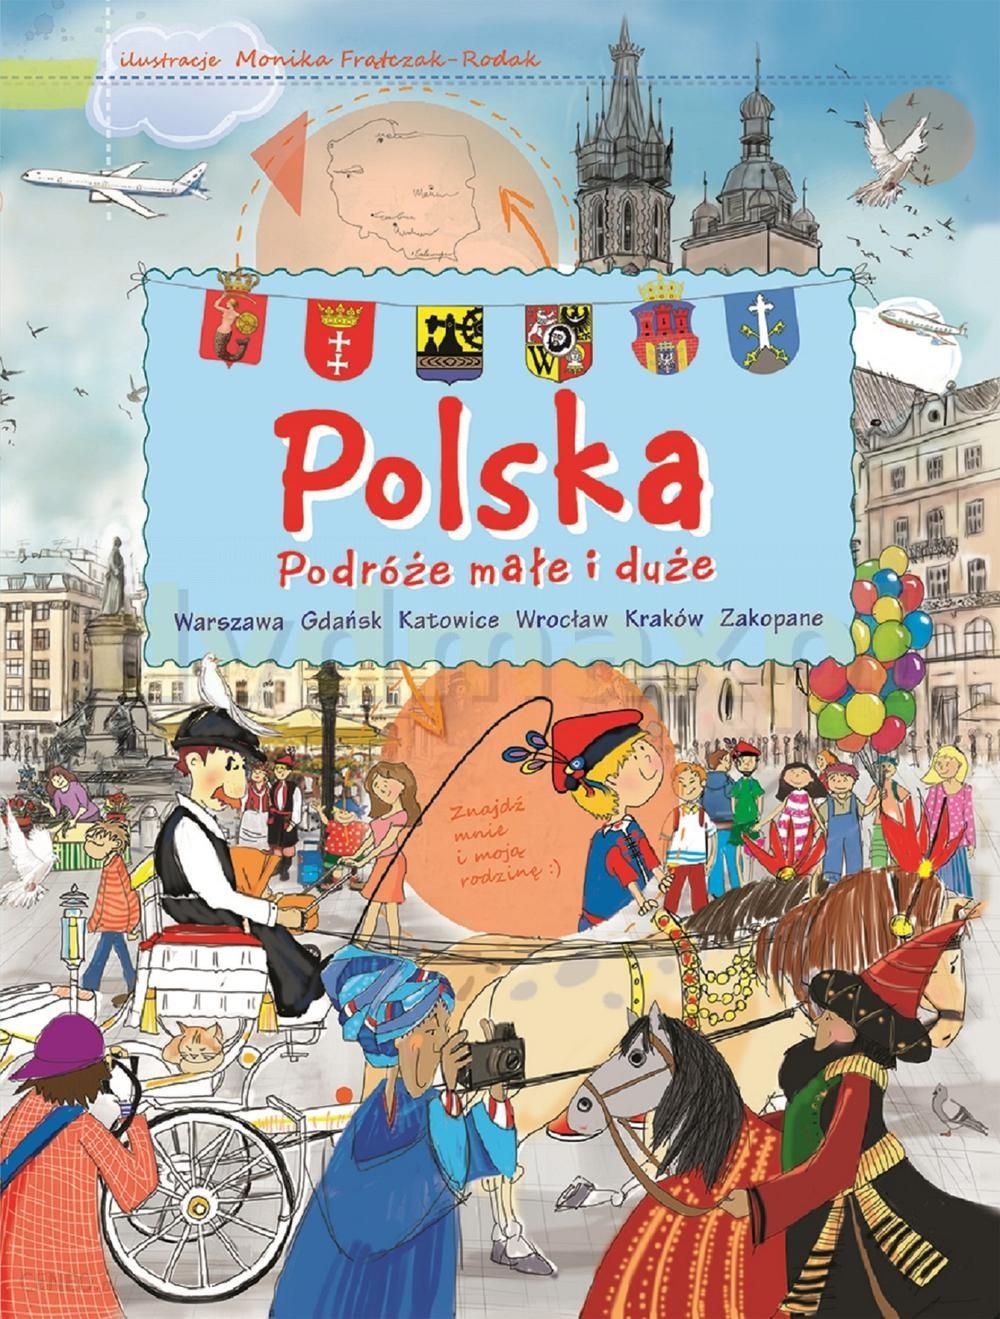 Polska. Podróże małe i duże [KSIĄŻKA] - Ceny i opinie - Ceneo.pl - Podróże Małe I Duże Konkurs